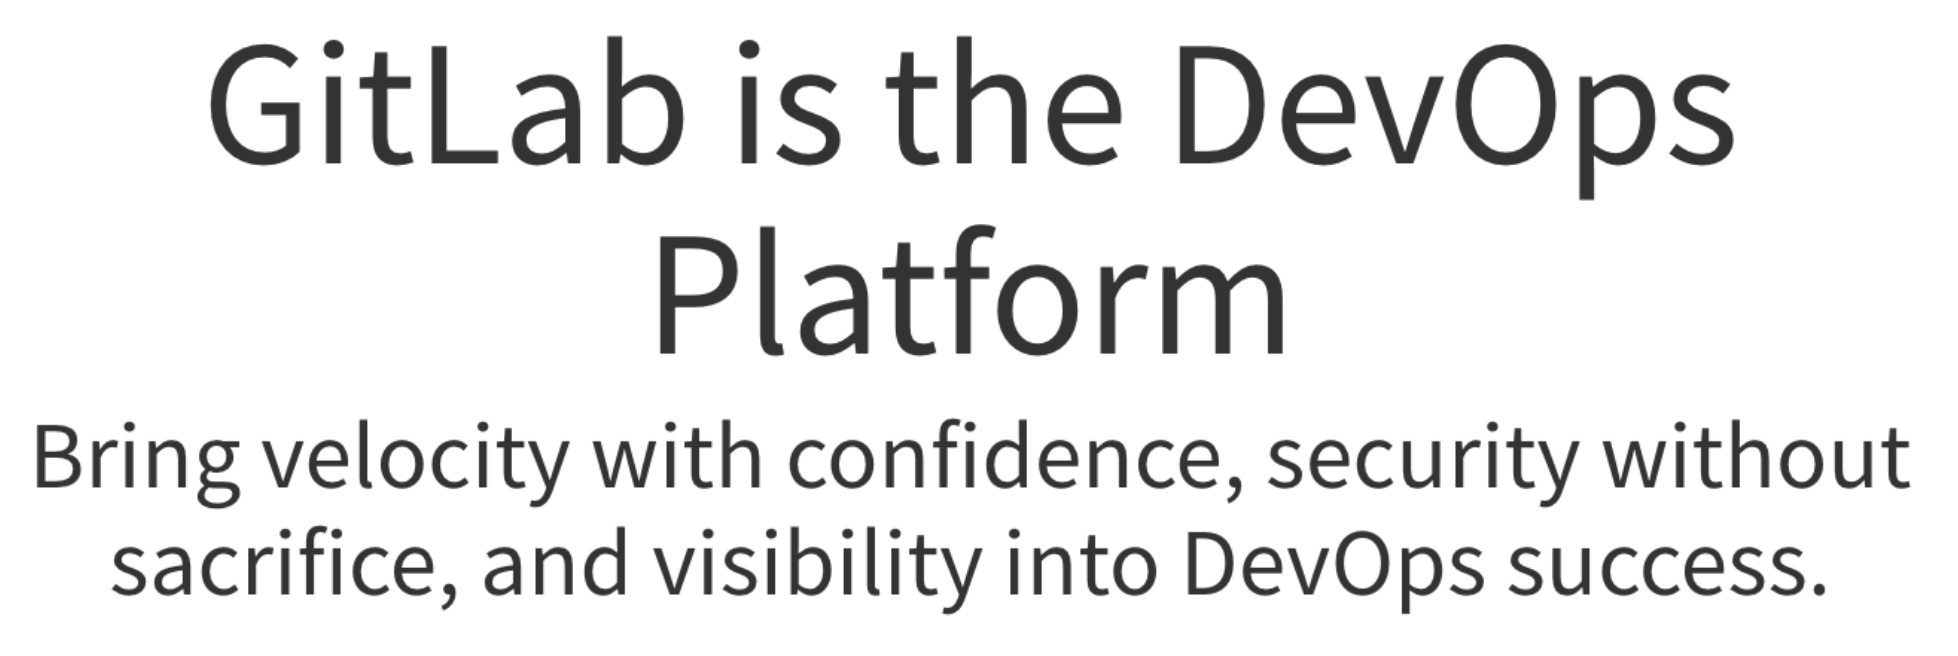 GitLab DevOps Platform